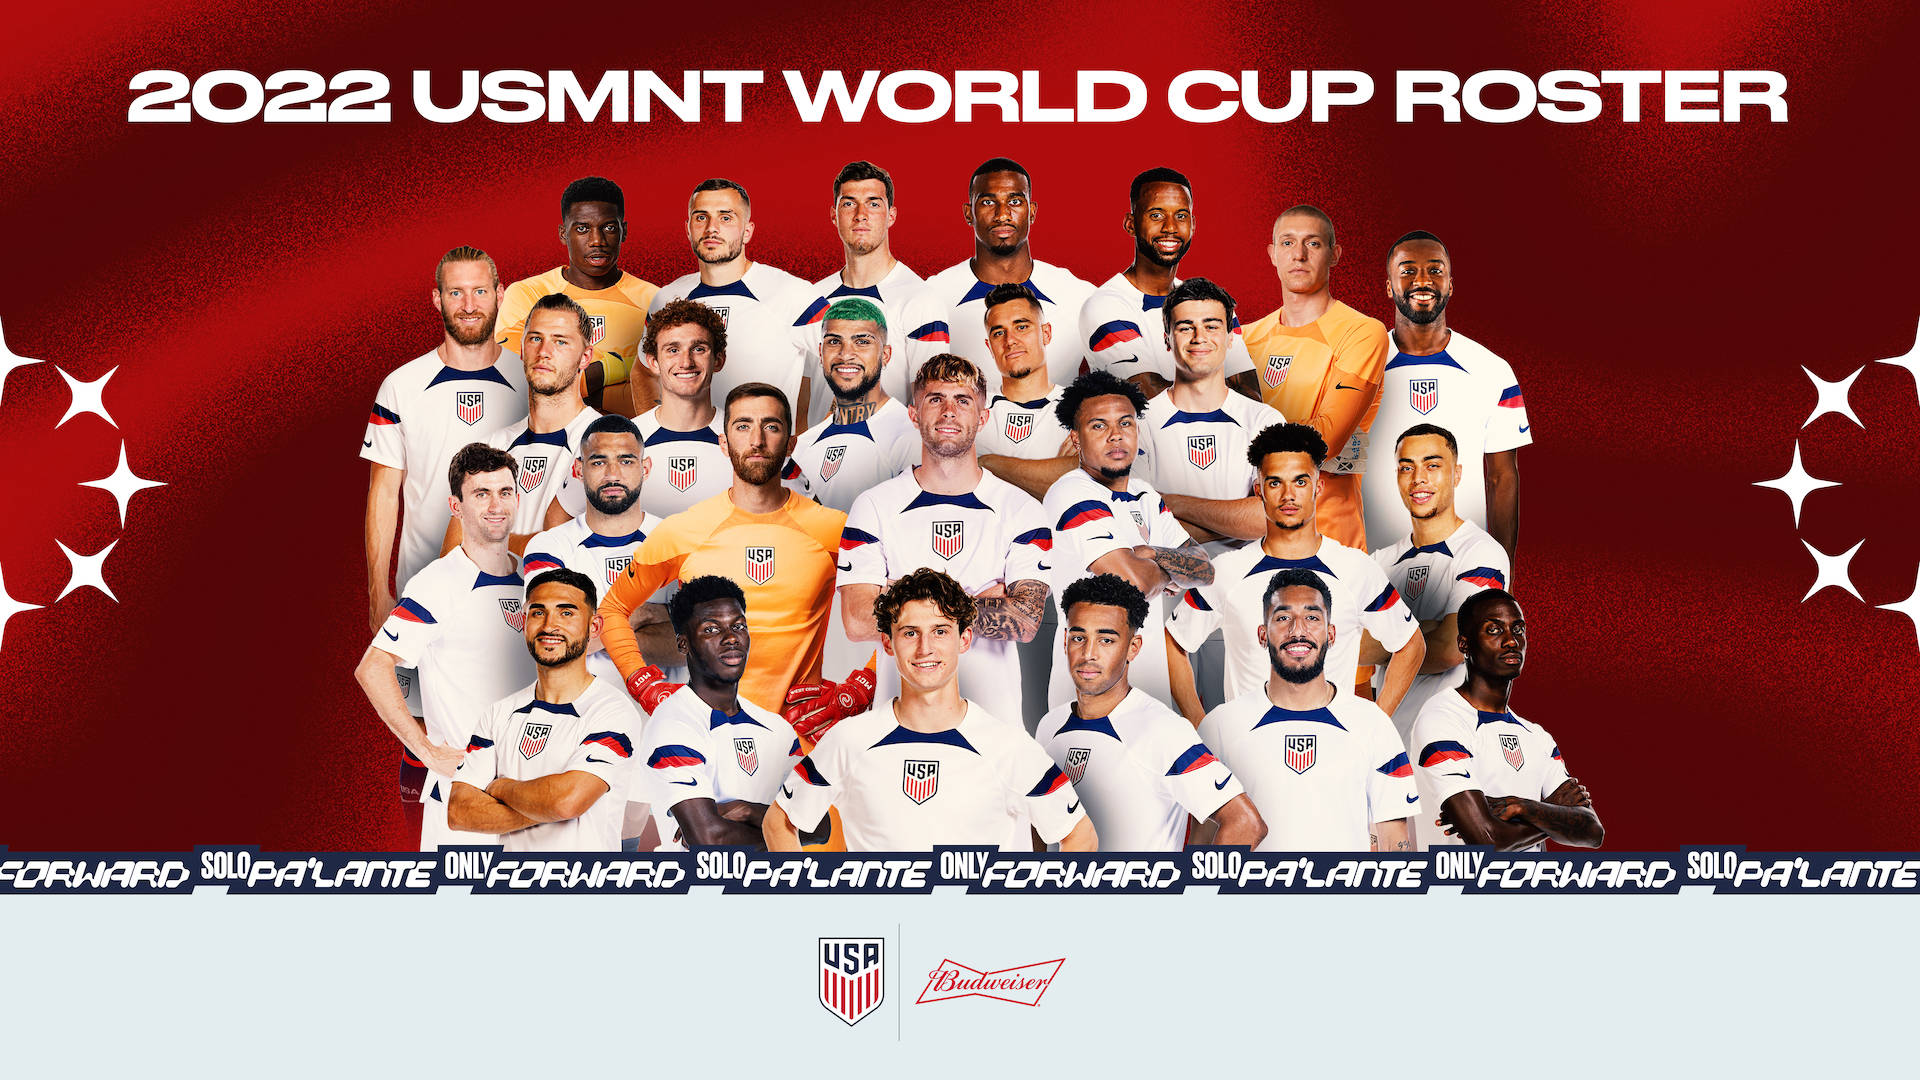 Equipeoficial Dos Estados Unidos De Futebol Para A Copa Do Mundo Papel de Parede